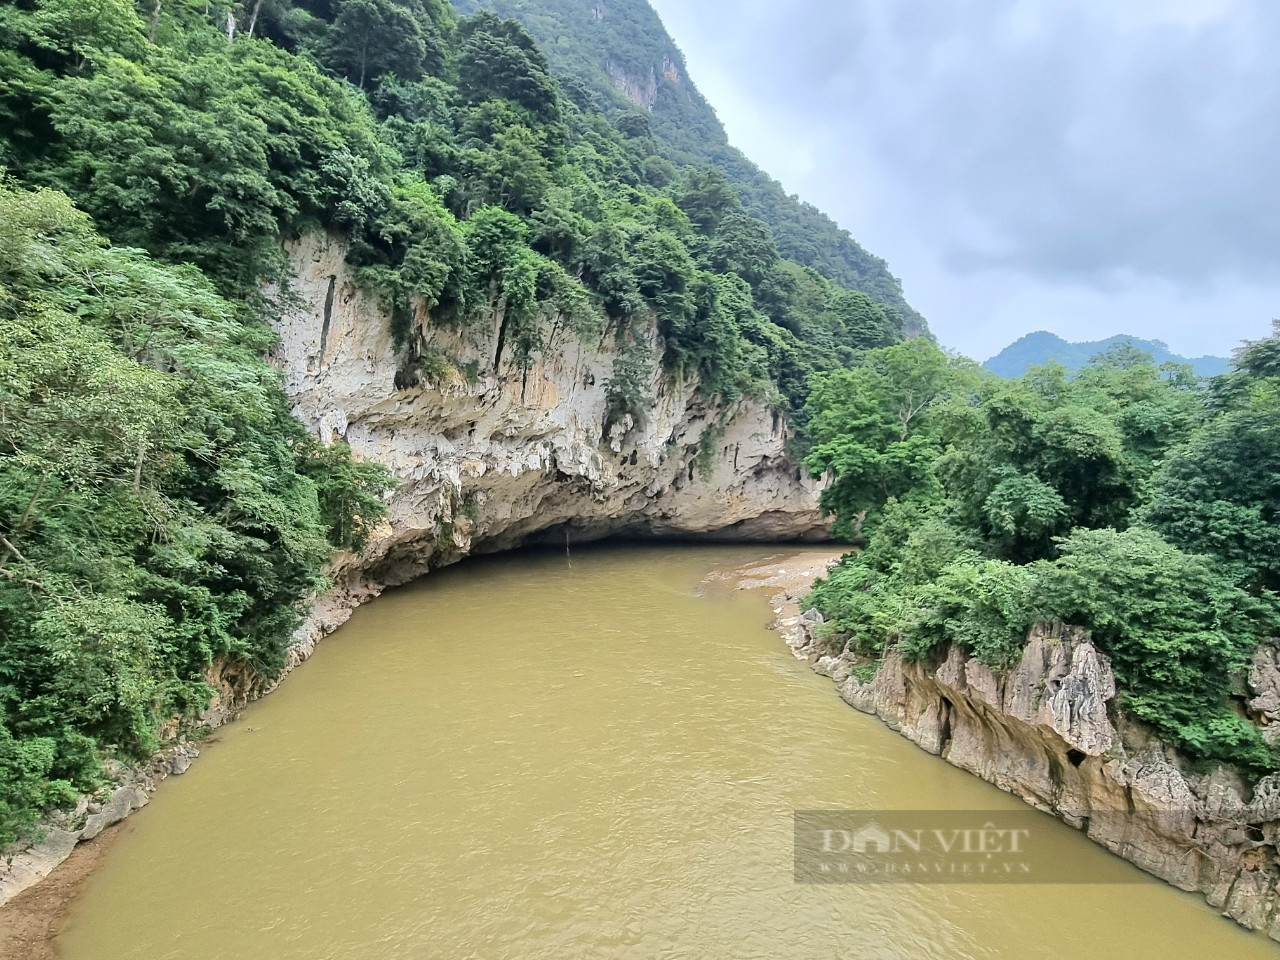 Kỳ bí hang đá chứa hơn 100 cỗ quan tài trên vách núi ở Thanh Hóa - Ảnh 2.